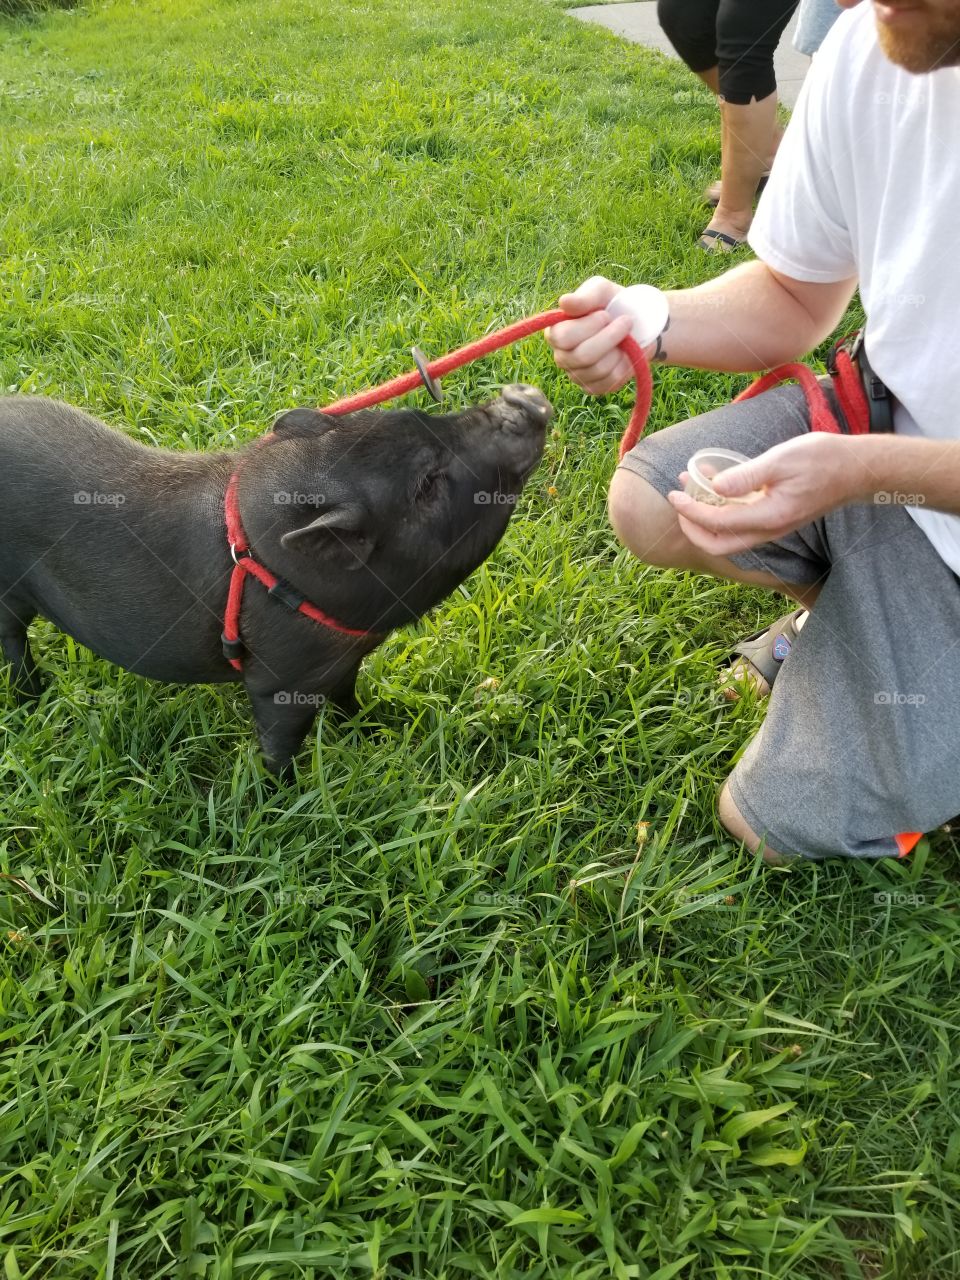 He walks his pig! A little piggy talking a walk.